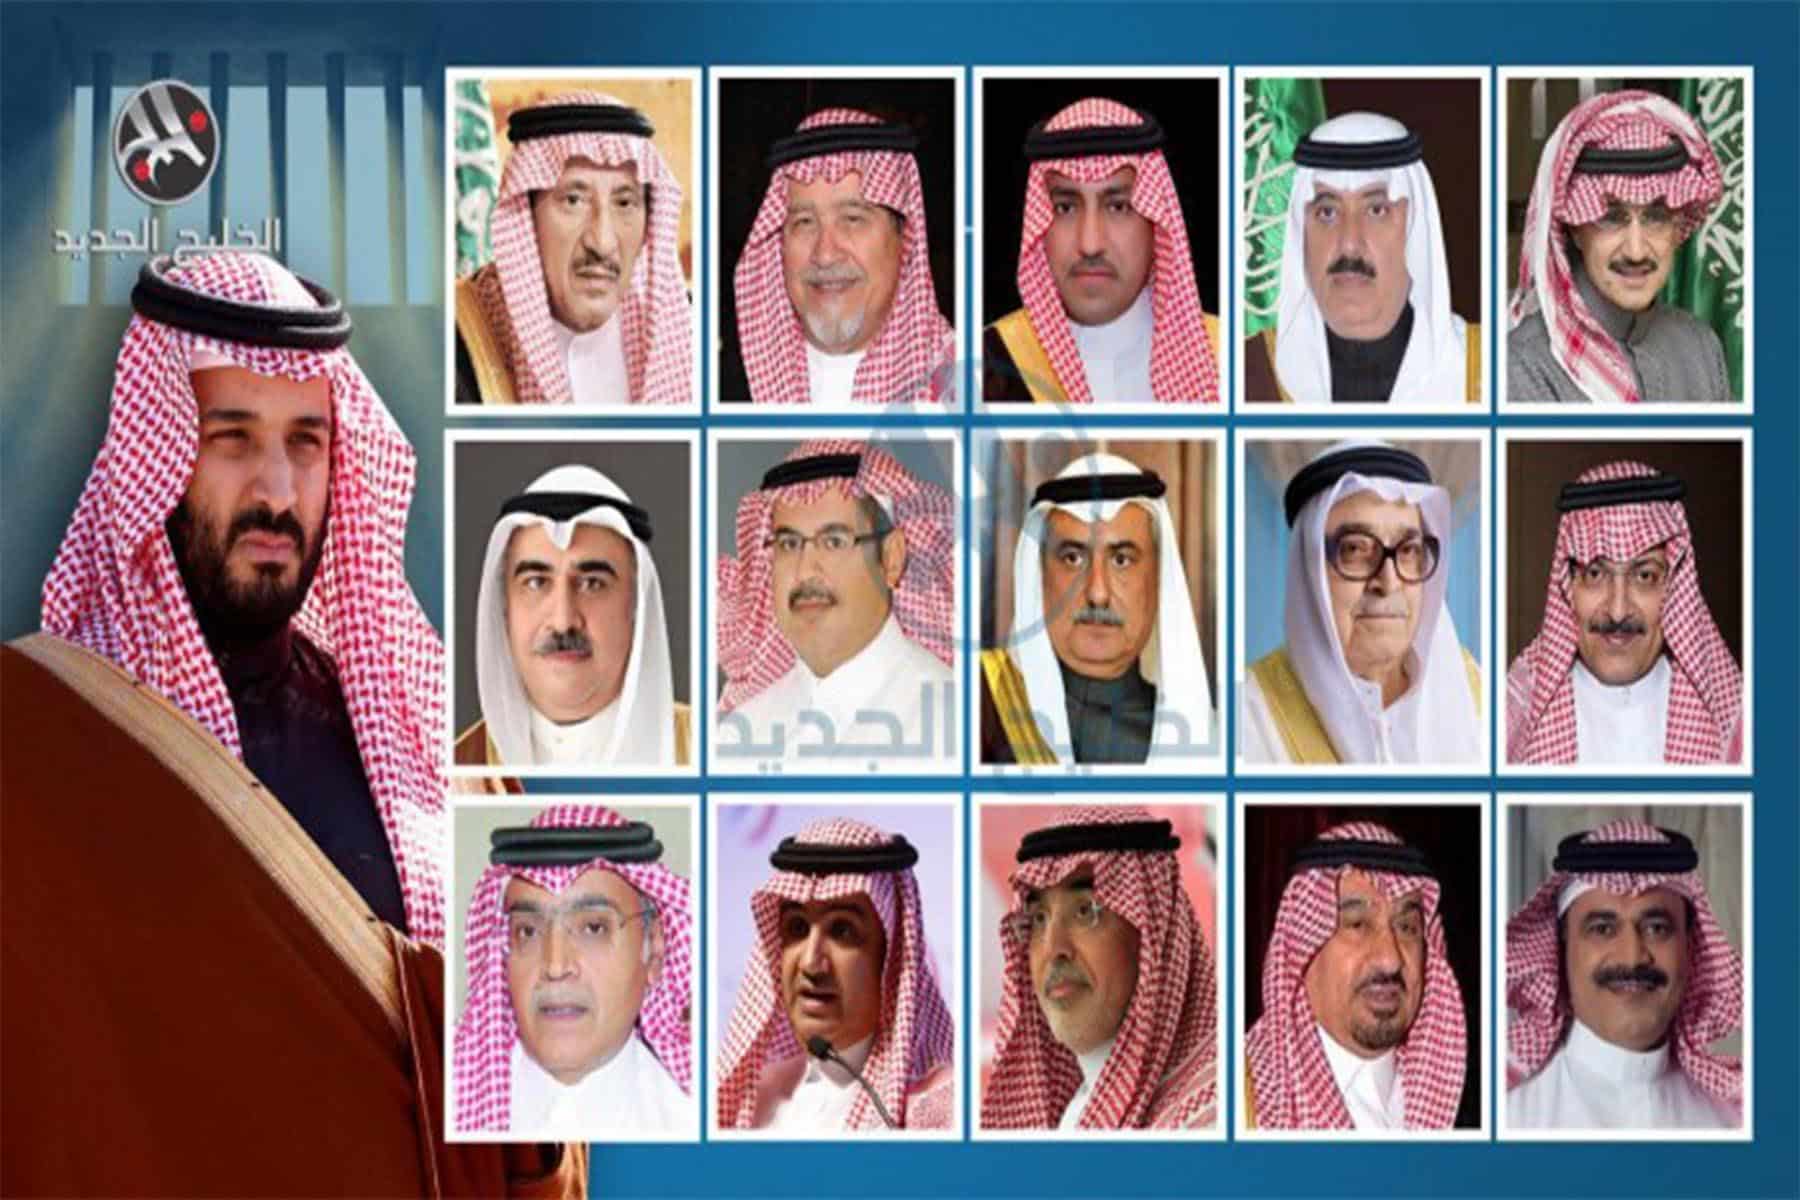 أسماء الأمراء المعتقلين بالسعودية watanserb.com